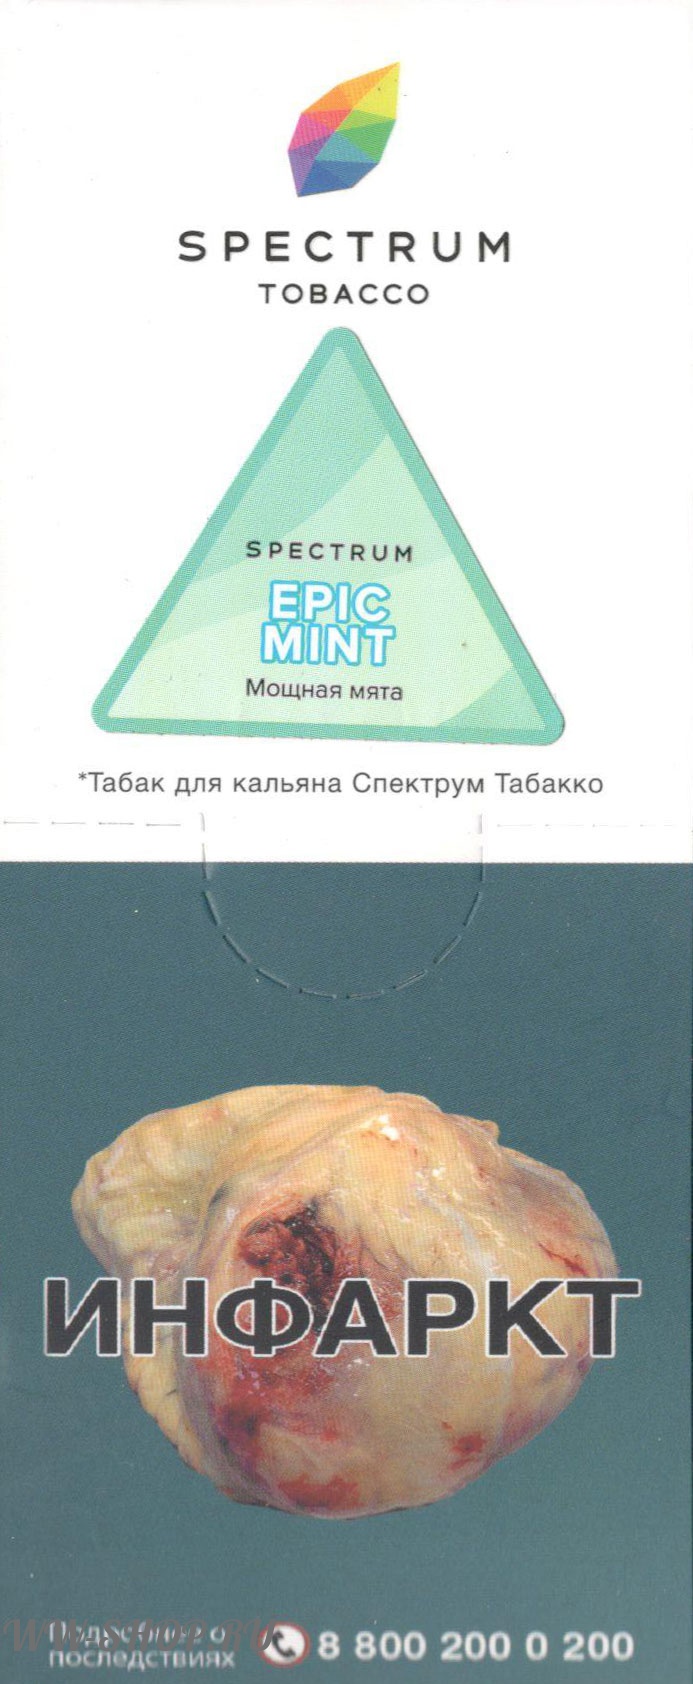 spectrum- мощная мята (epic mint) Нижневартовск